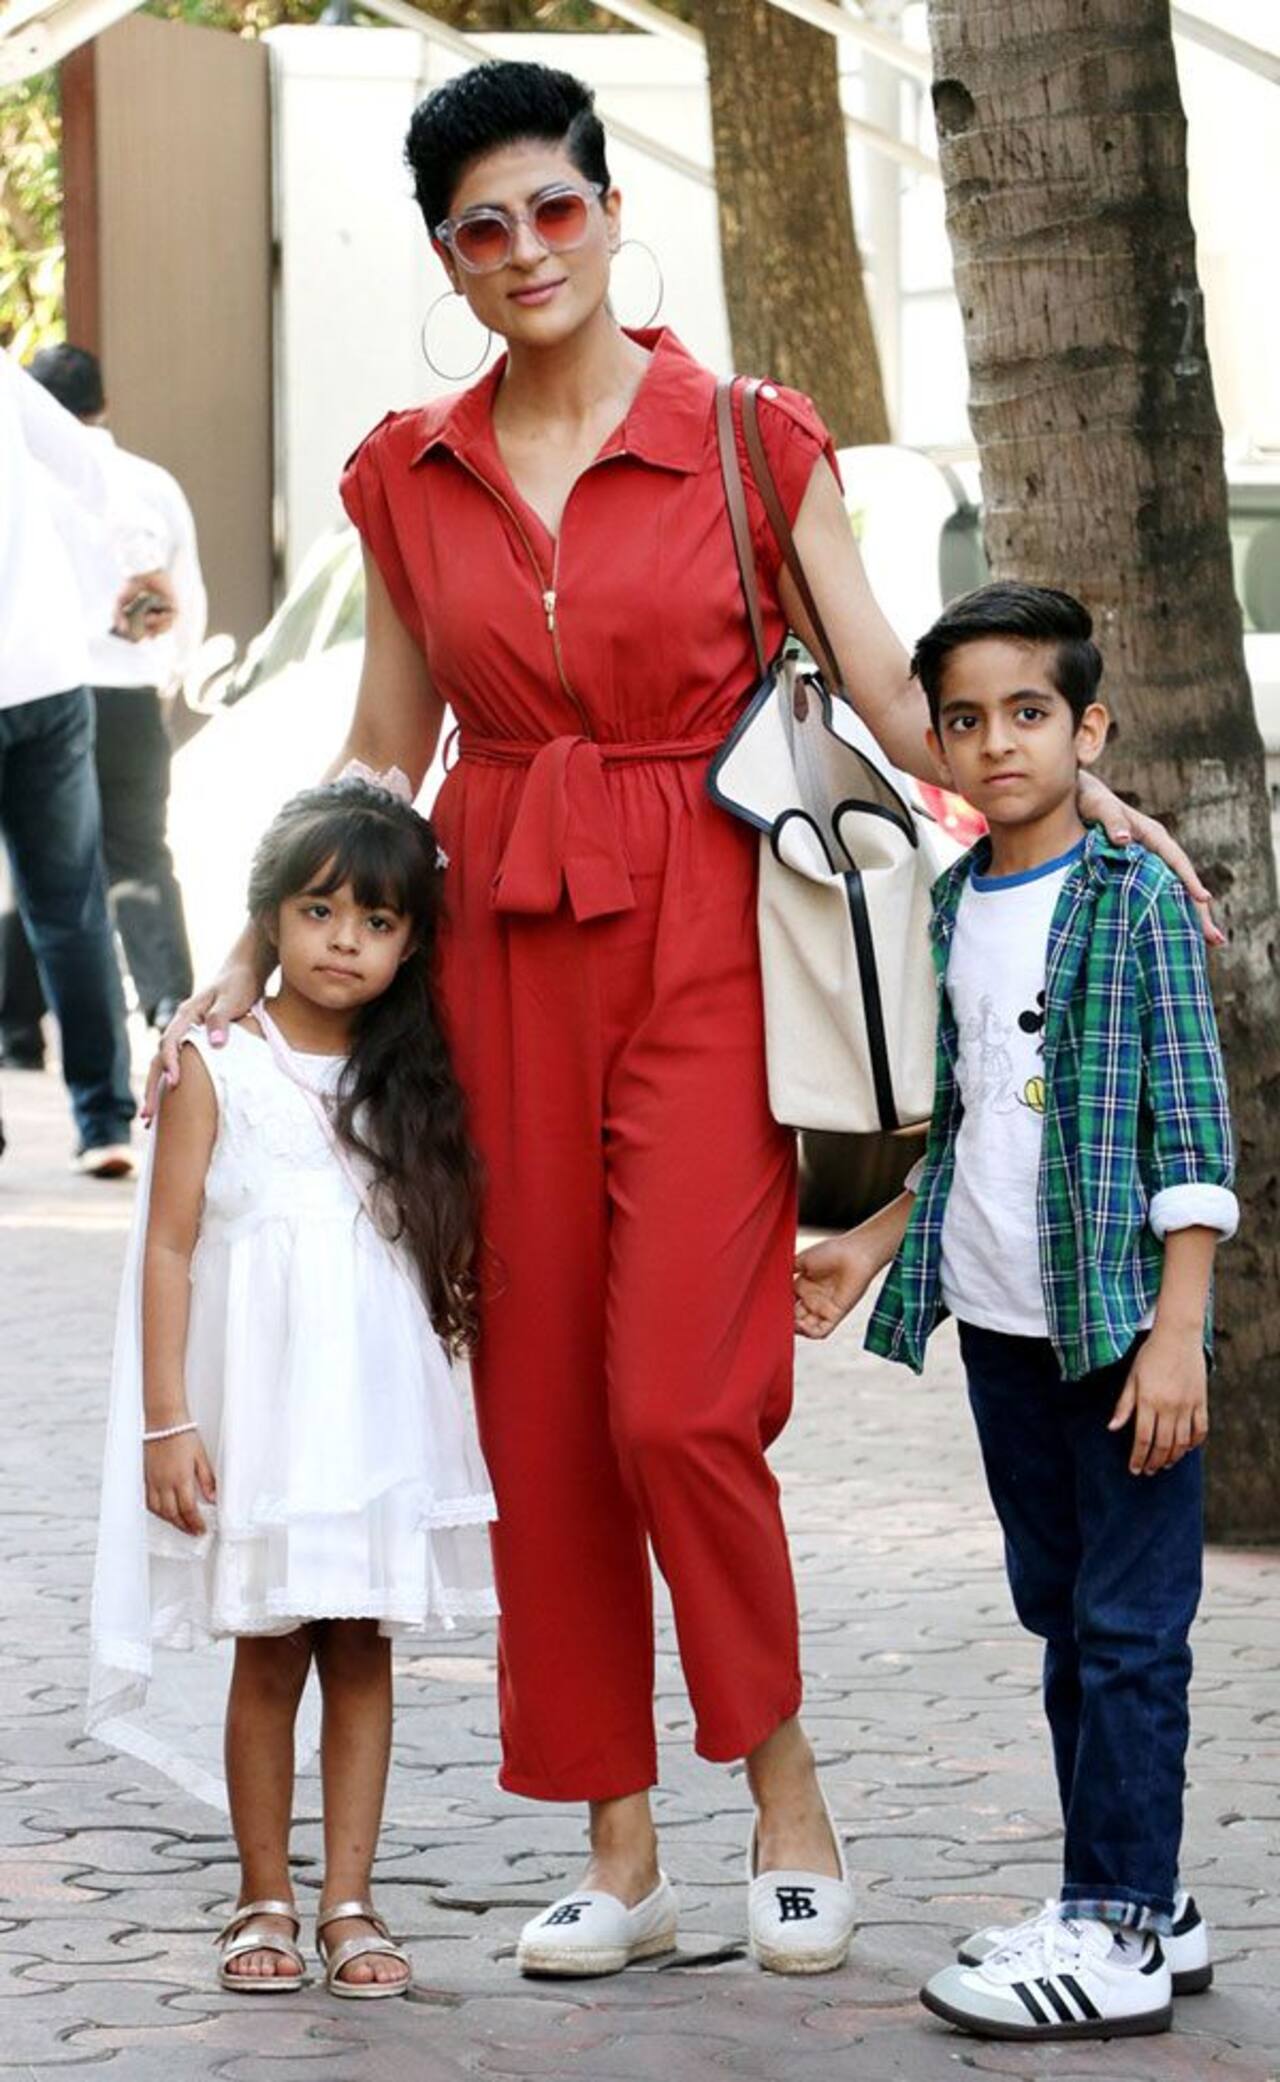 ताहिरा कश्यप भी बच्चों के साथ आई नजर